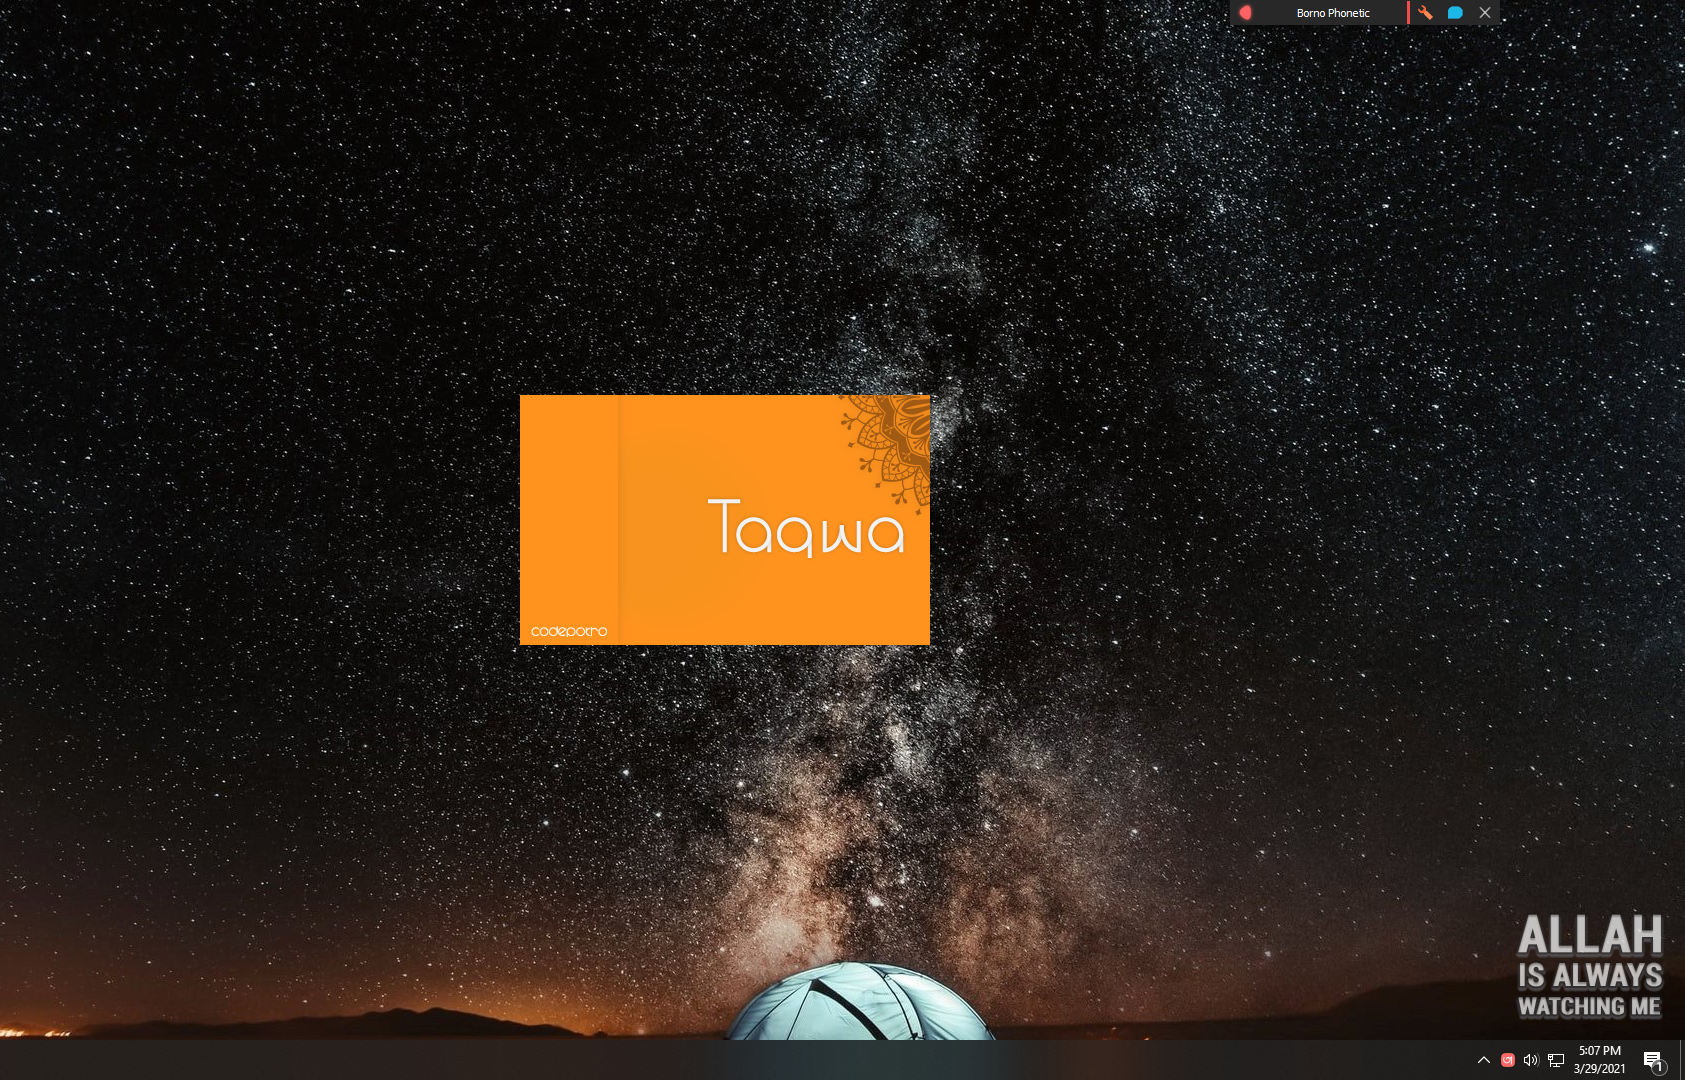 Windows 10 Taqwa - A Useful Reminder full